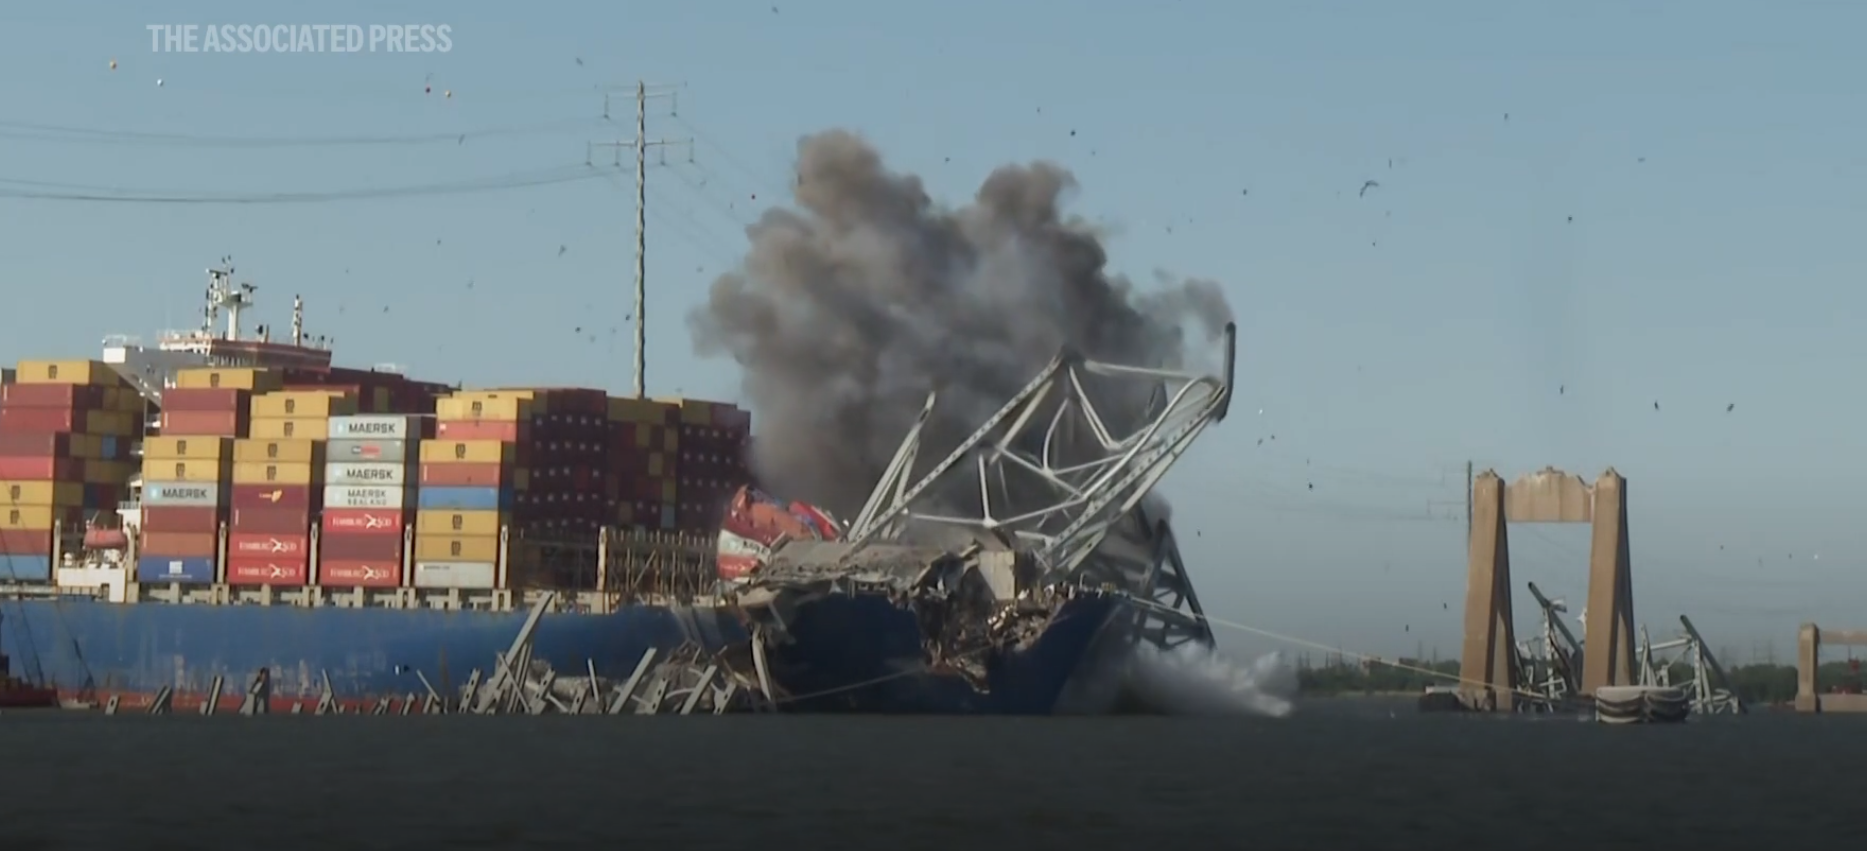 Khoảnh khắc phần còn lại của cầu Baltimore (Mỹ) sụp đổ hoàn toàn do bị kích nổ có kiểm soát- Ảnh 1.